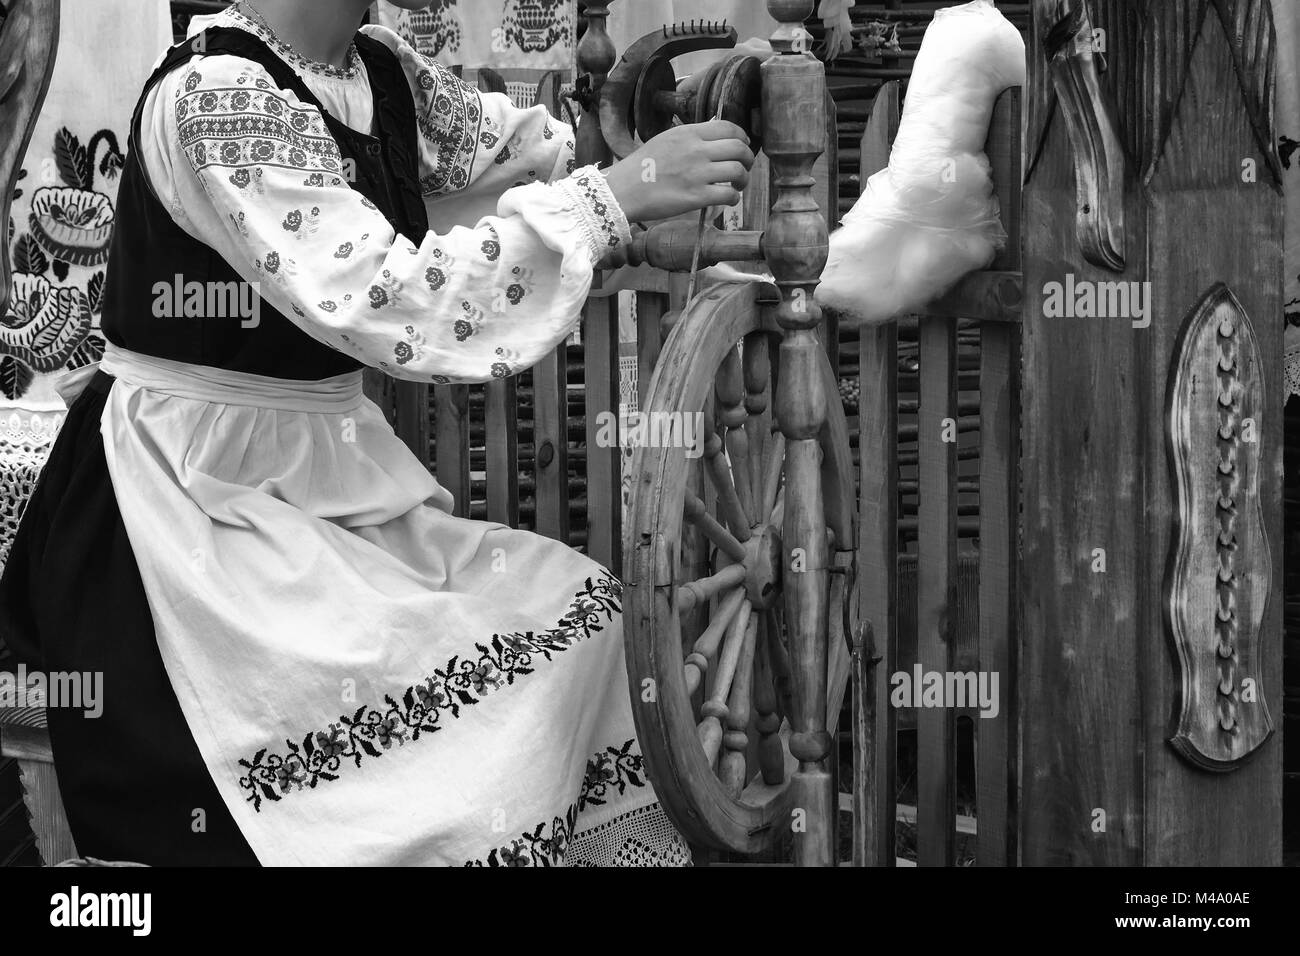 Junge Frau spinnen Thread auf ein sich drehendes Rad. Schwarz-weiß-Foto. Stockfoto